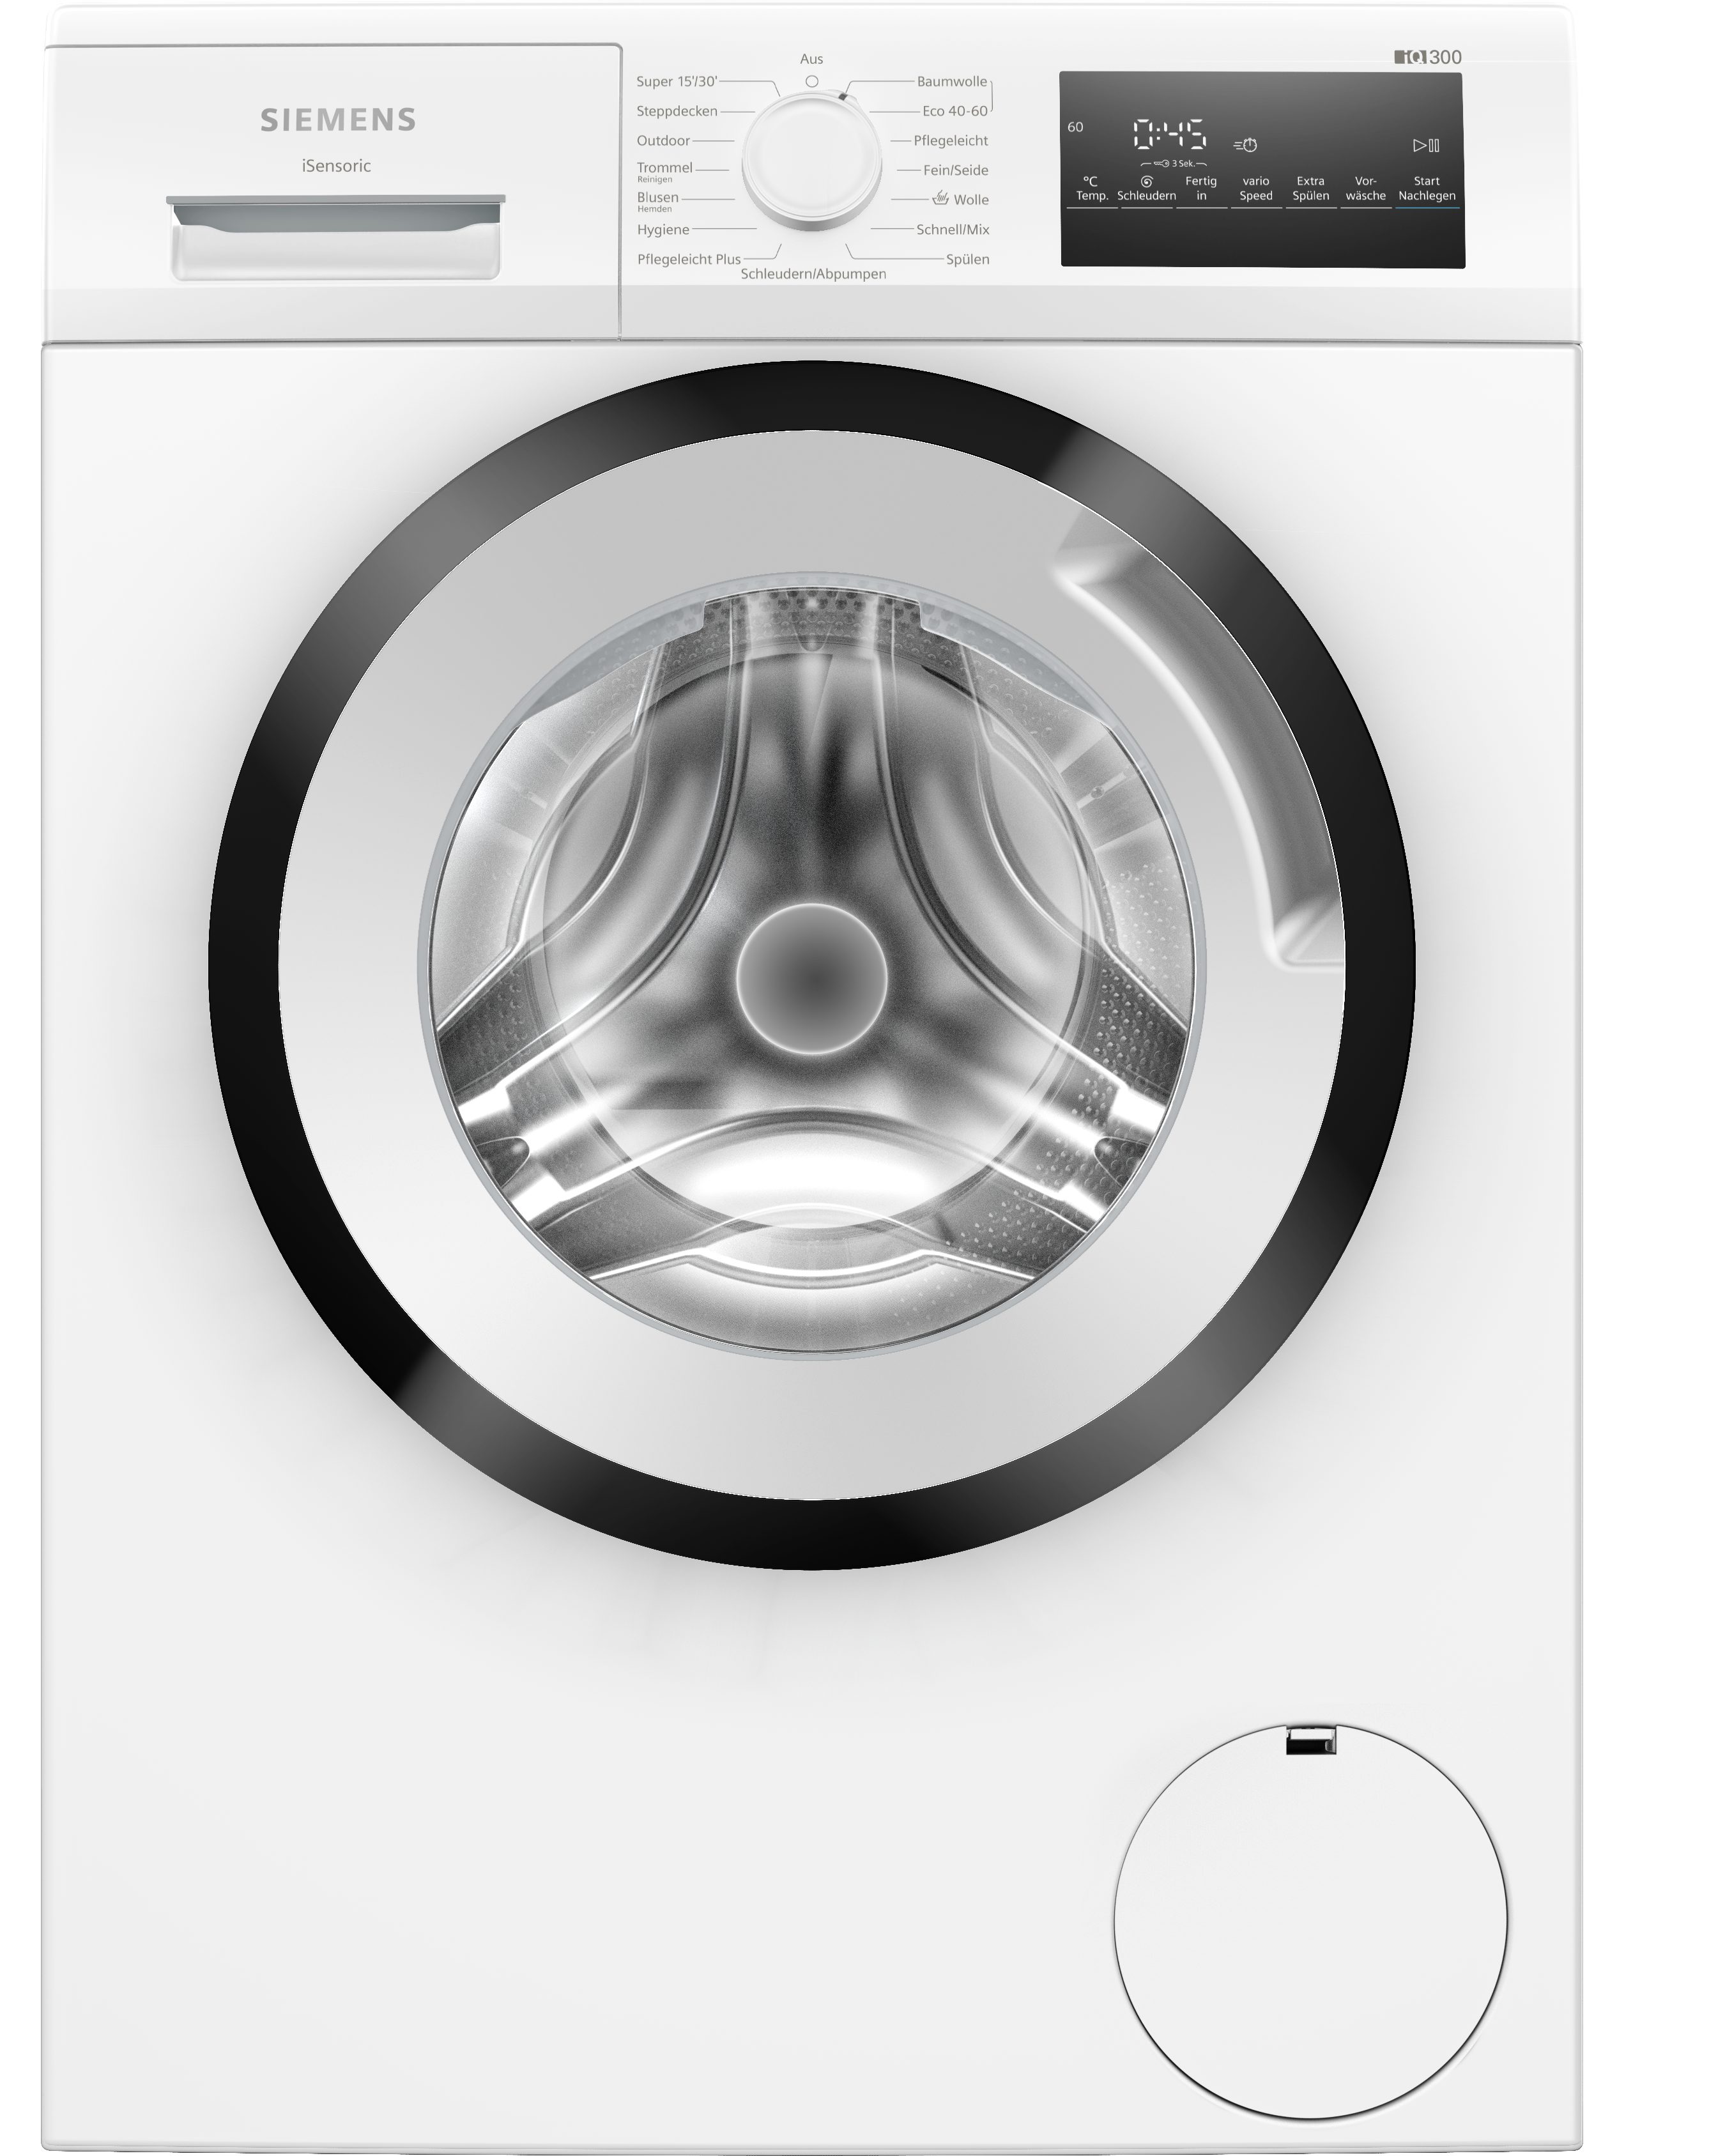 SIEMENS Waschmaschine iQ300 7 U/min, iQdrive: 1400 und effizient, langlebig WM14N223, kg